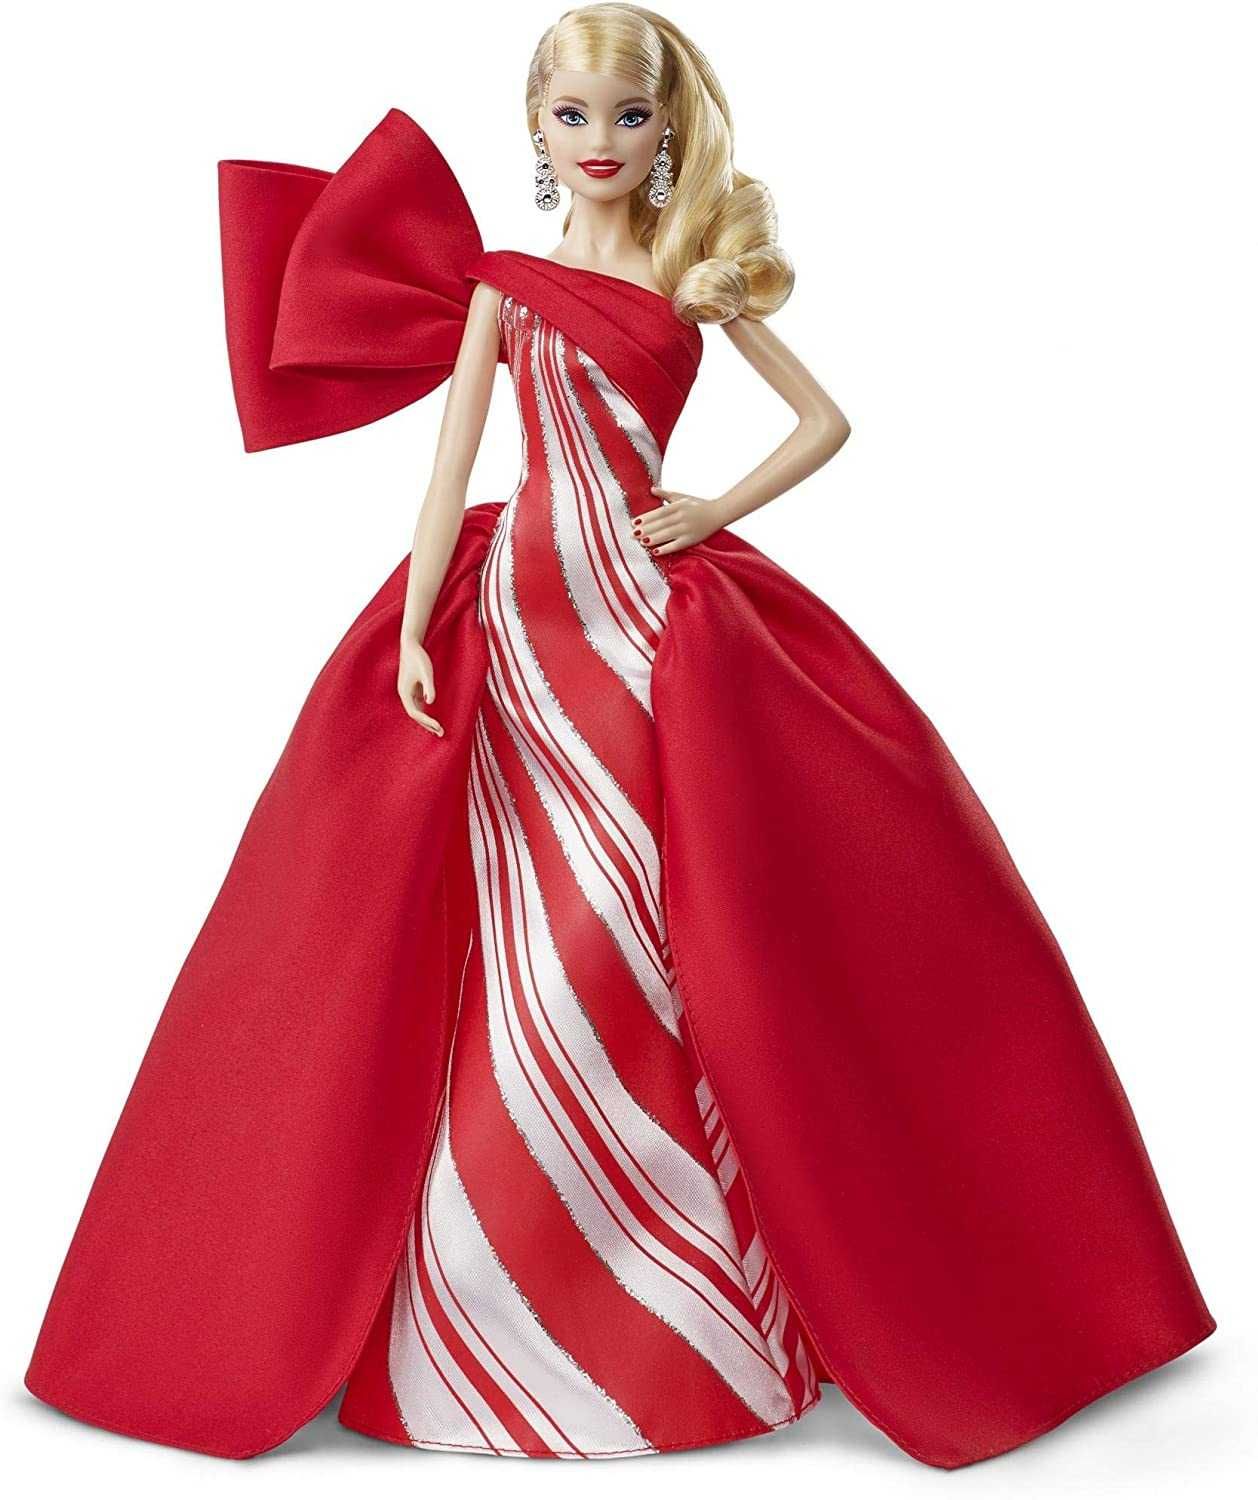 Барби Праздничная в красном платье коллекционная Barbie 2019 Holiday